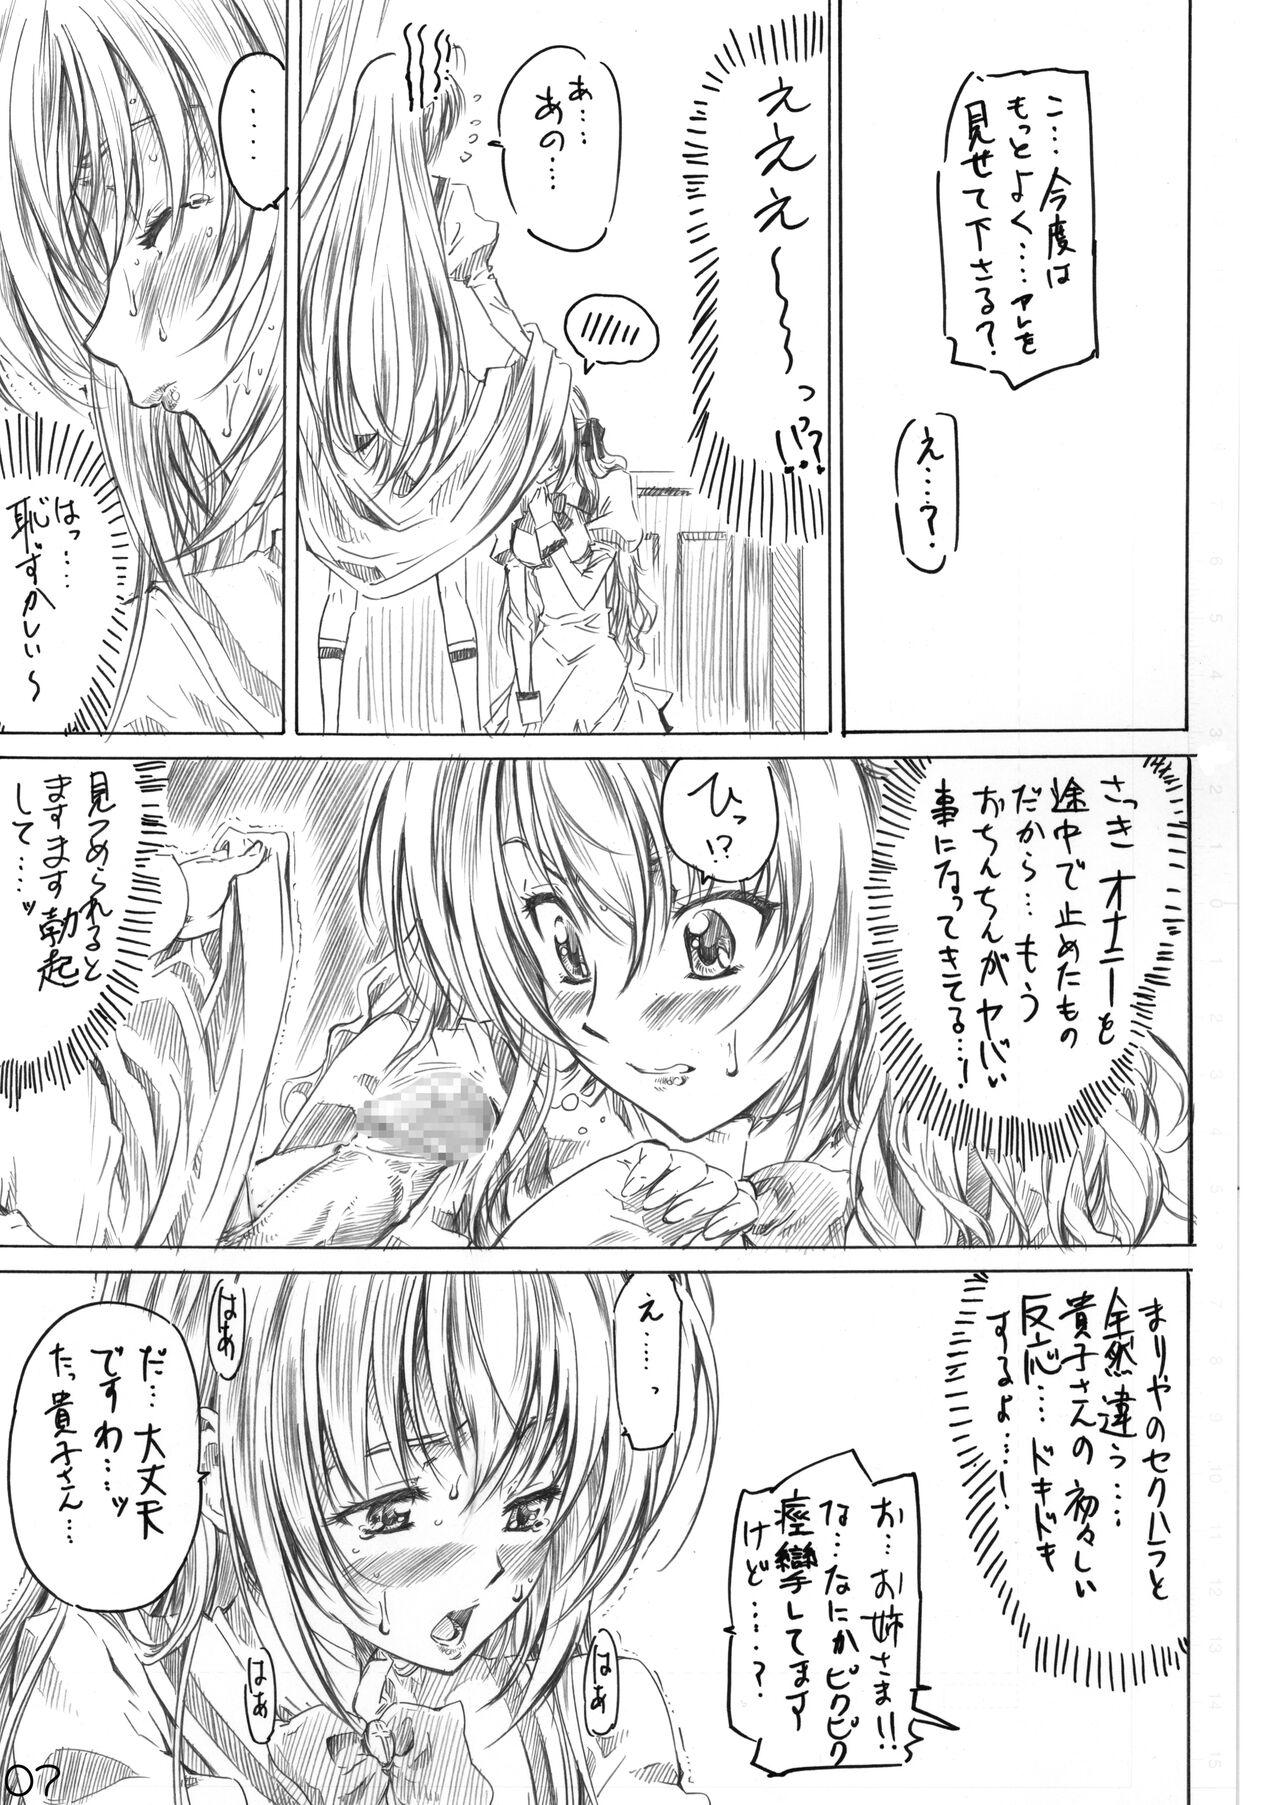 Licking Otome wa Boku de Nani Shiteru - Otome wa boku ni koishiteru Arabic - Page 5